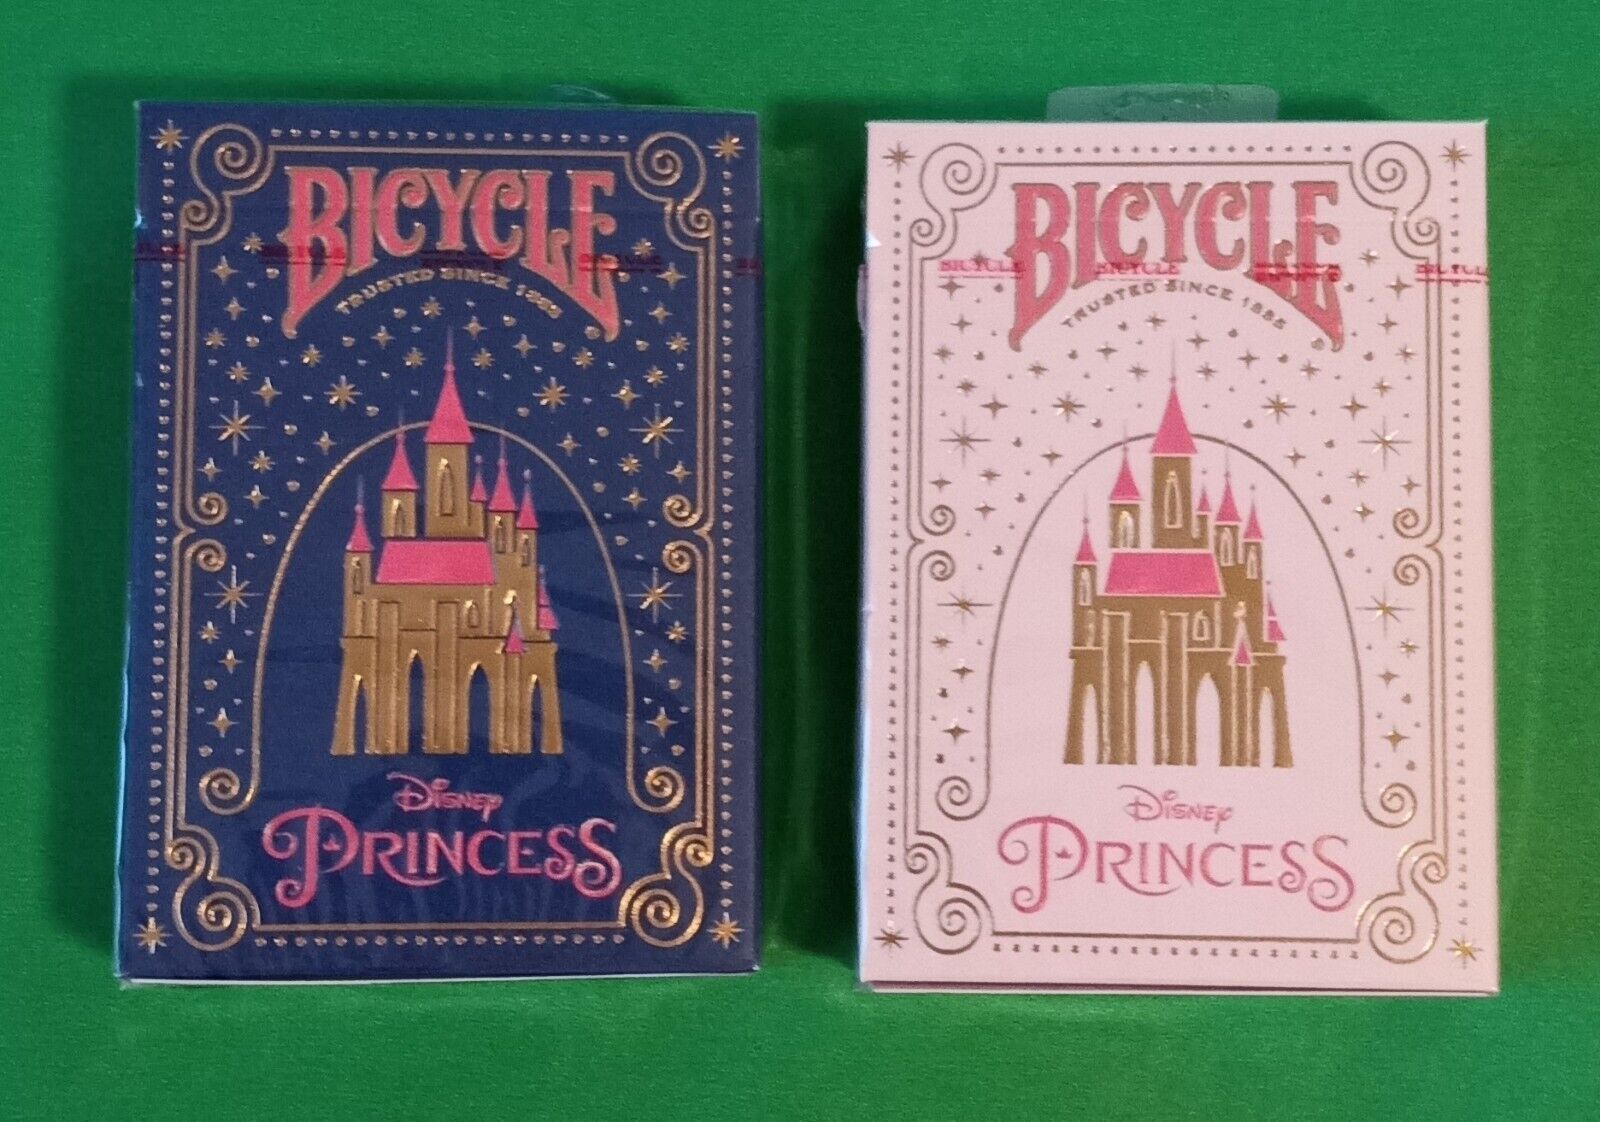 2 DECKS Bicycle Disney Princess blue & pink playing cards FREE USA SHIPPING